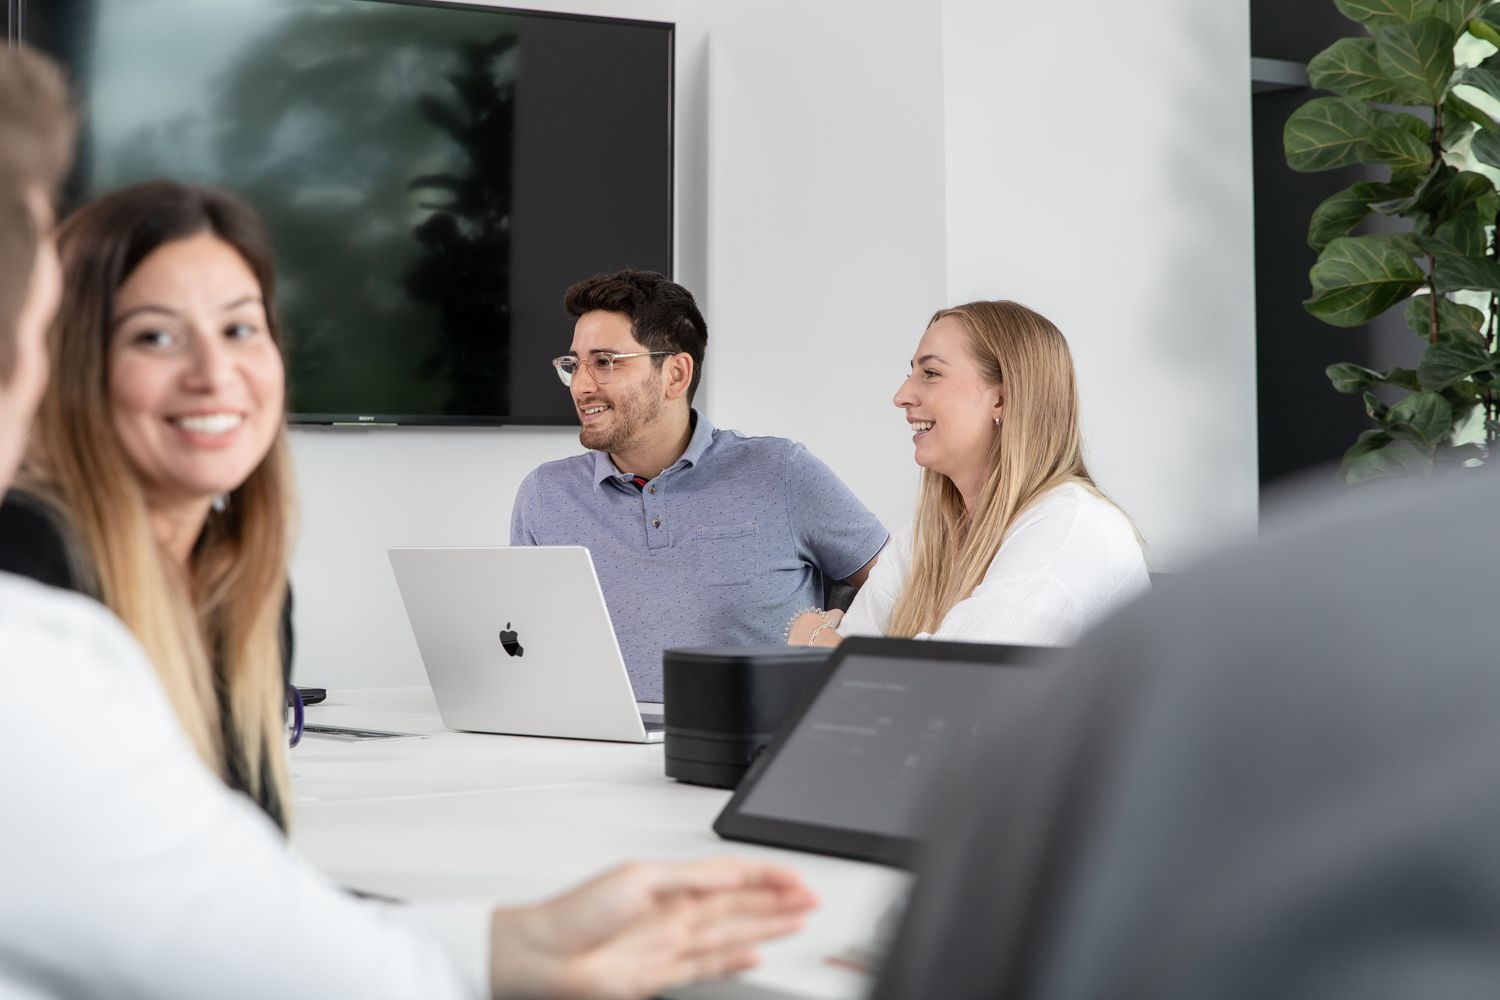 Mehrere Mitarbeiter und Mitarbeiterinnen sitzen im Meetingraum und führen Gespräche, im Mittelpunkt ist ein Apple MacBook zu sehen.